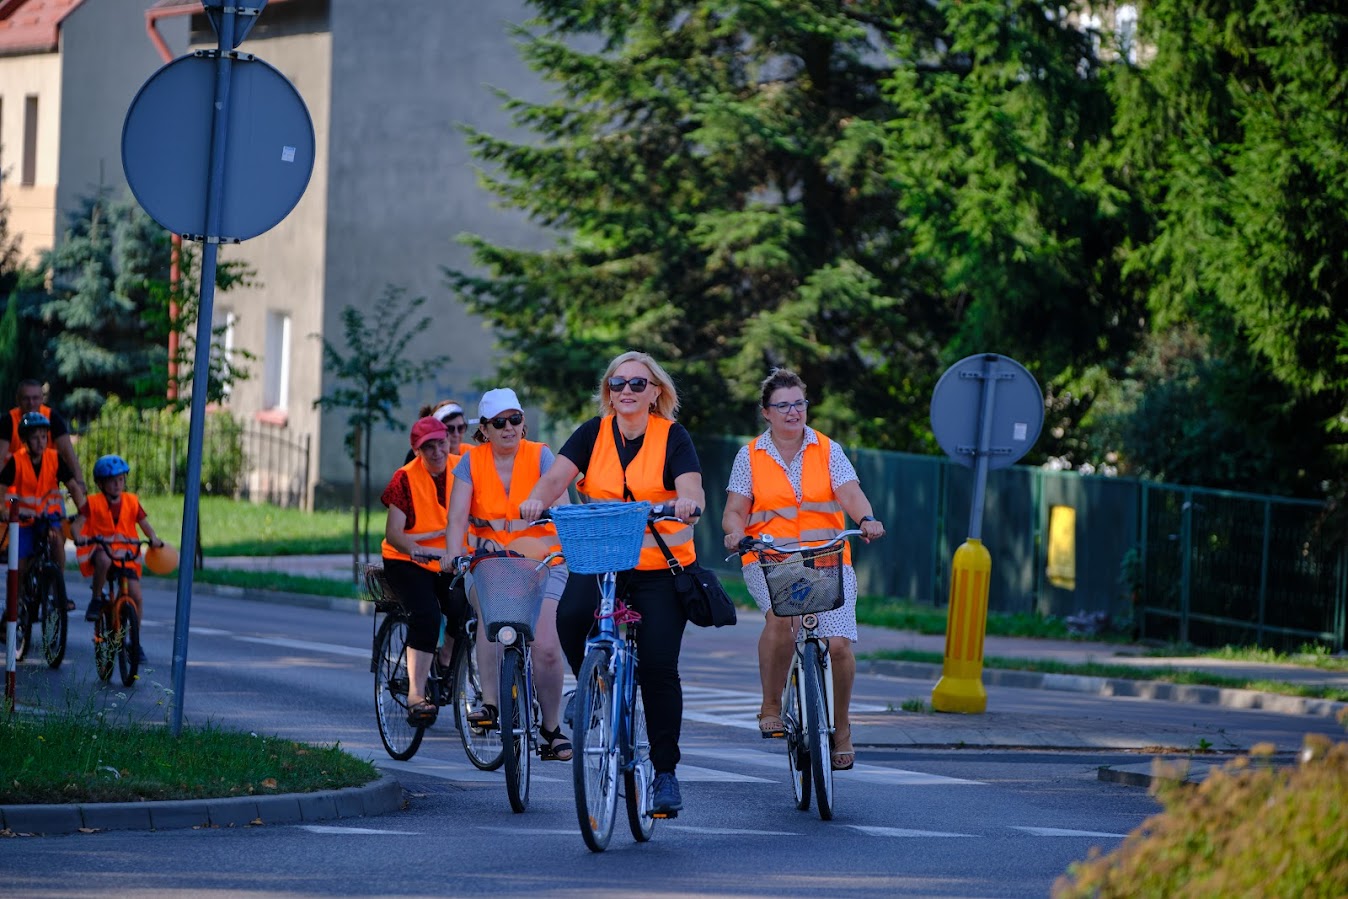 uczestnicy rajdu rowerowego jadą drogą publiczną (rondo), wszyscy mają założone pomarańczowe kamizelki odblaskowe z napisem Odjazdowy Bibliotekarz